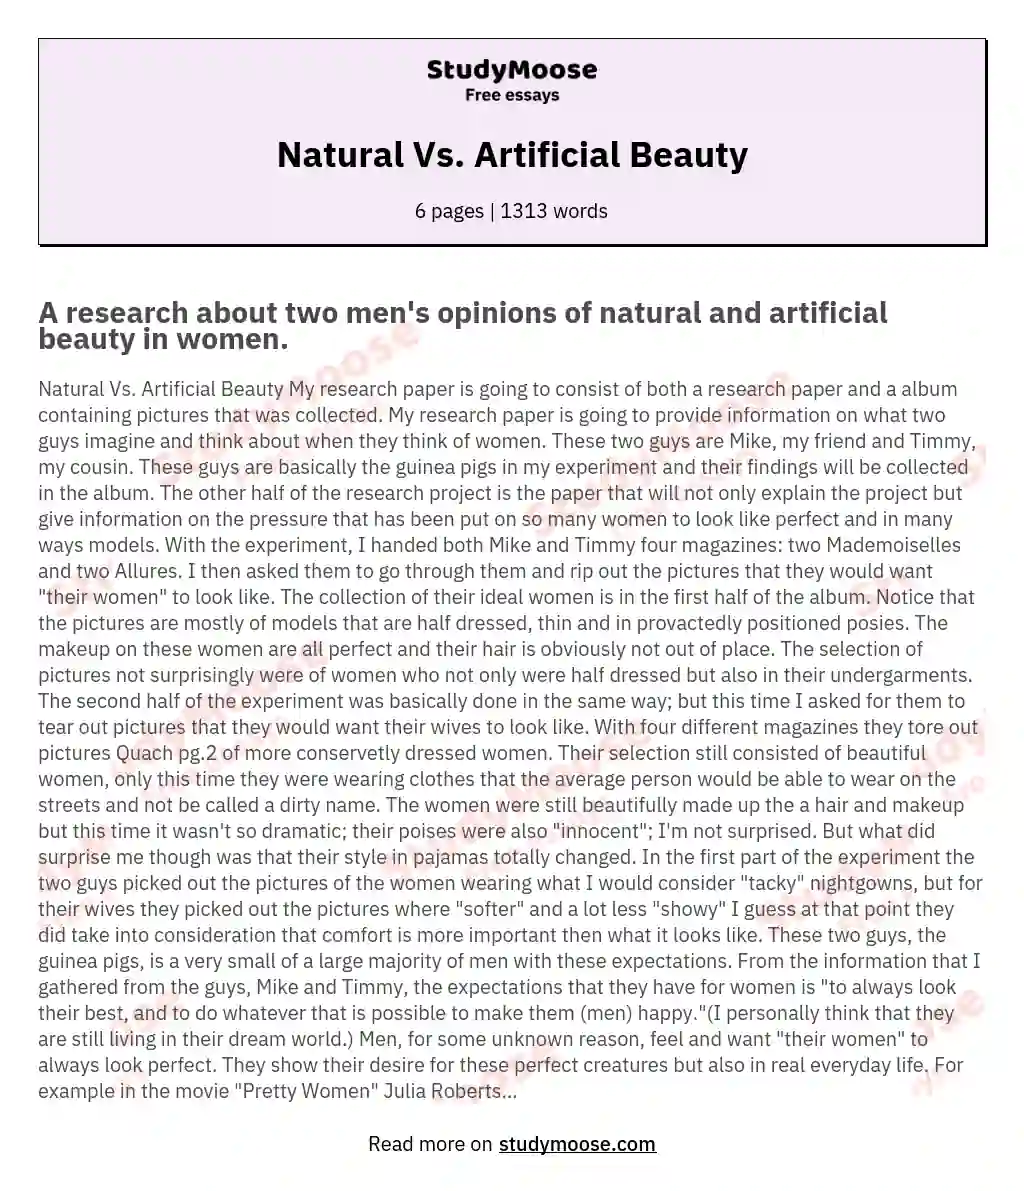 Natural Vs. Artificial Beauty essay